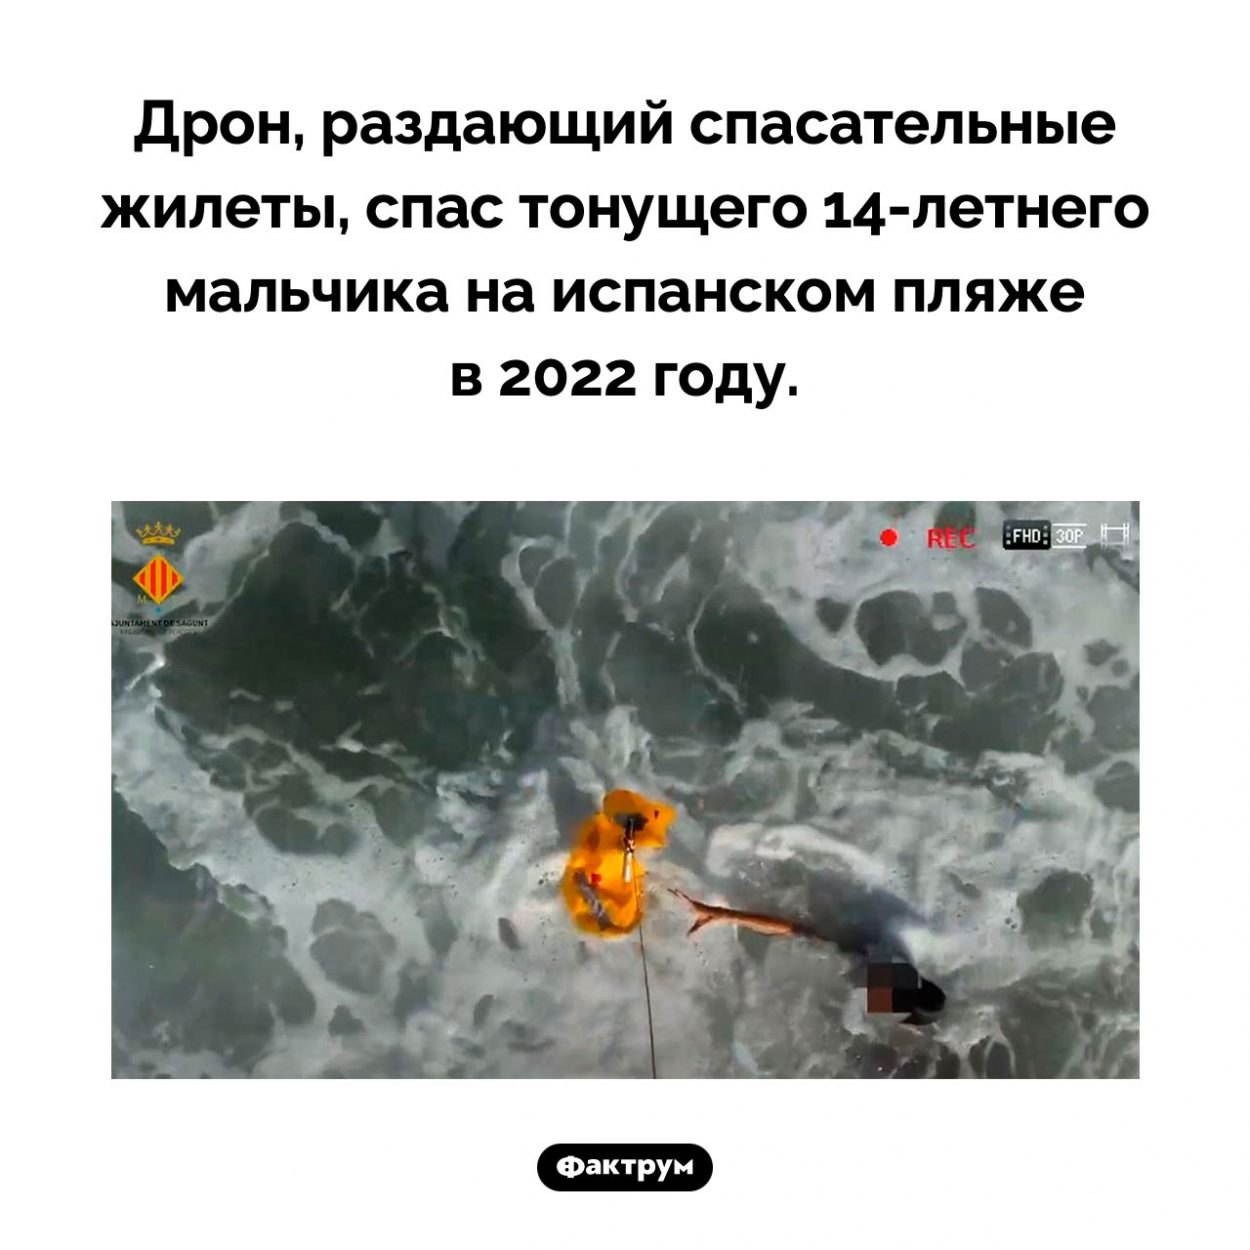 Дрон спас мальчика. Дрон, раздающий спасательные жилеты, спас тонущего <nobr>14-летнего</nobr> мальчика на испанском пляже в 2022 году.